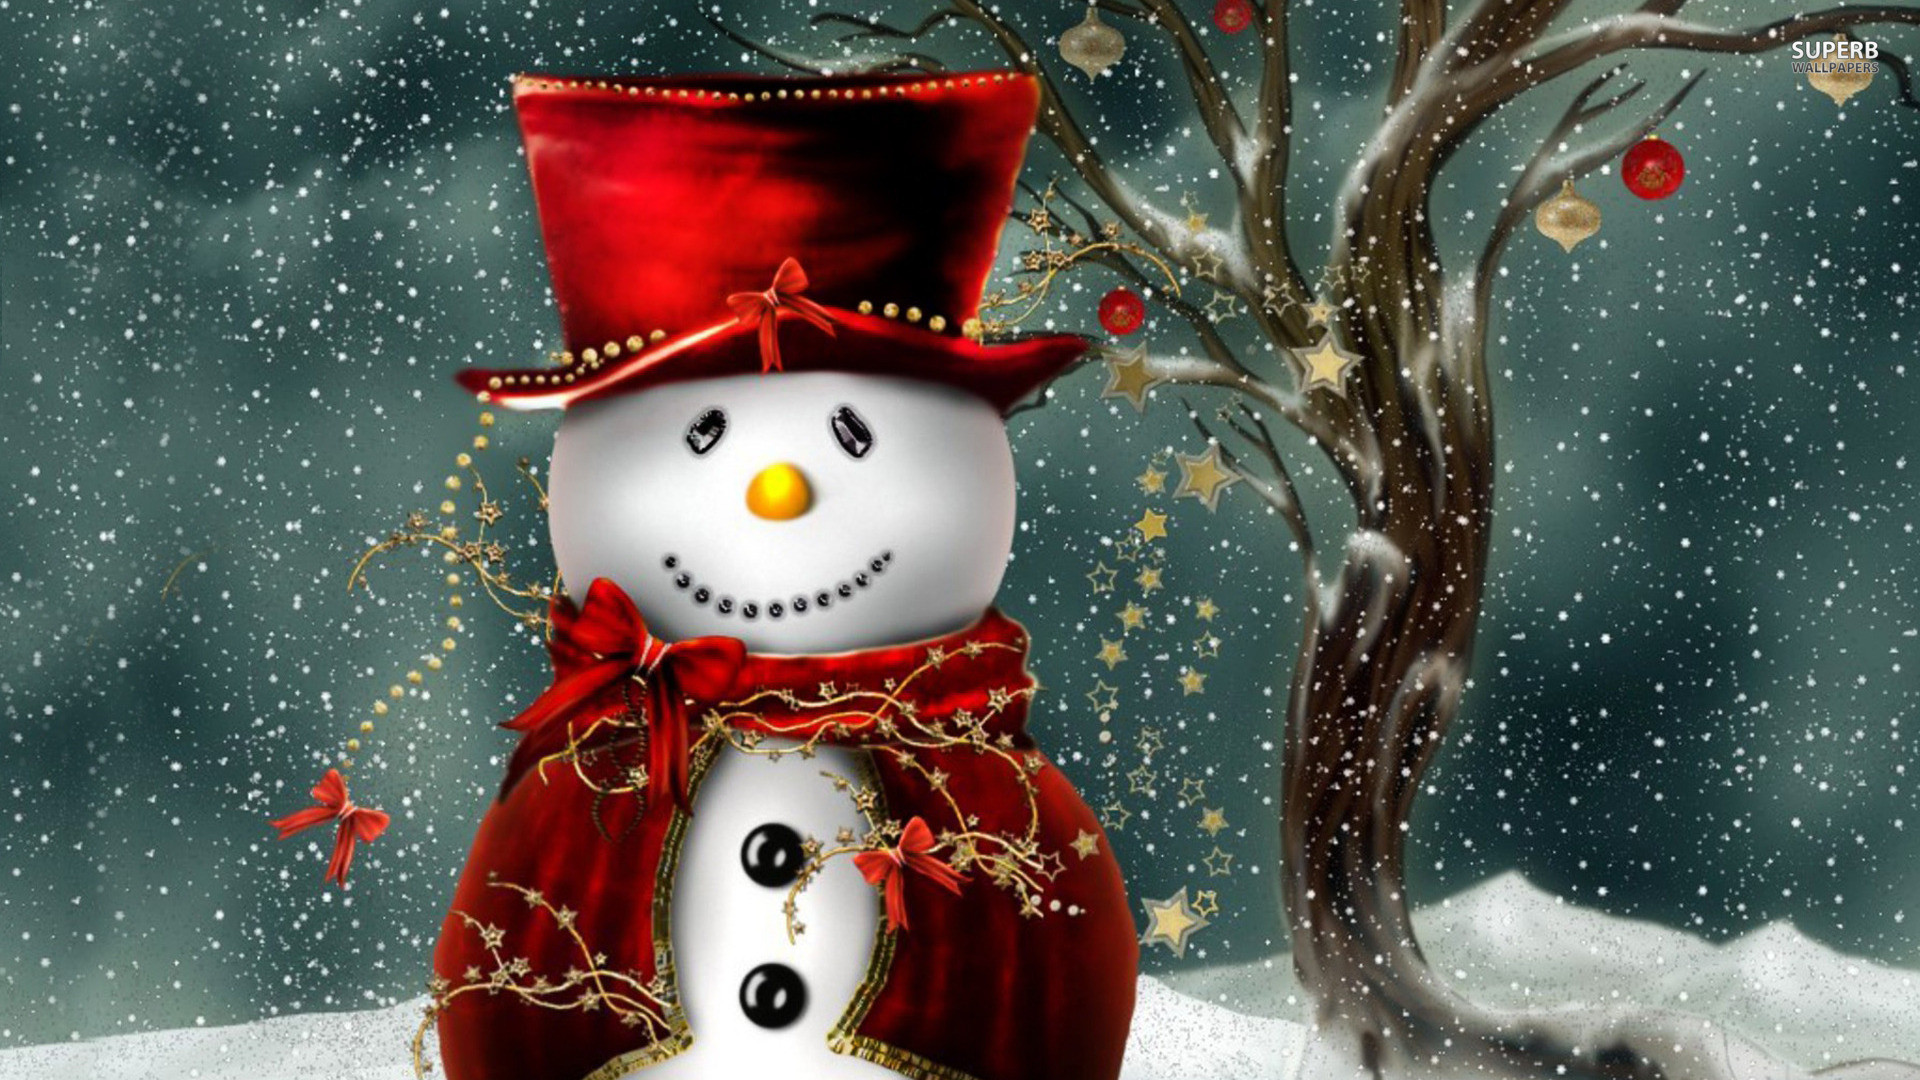 muñeco de nieve fondos de pantalla hd,monigote de nieve,invierno,nochebuena,nieve,navidad